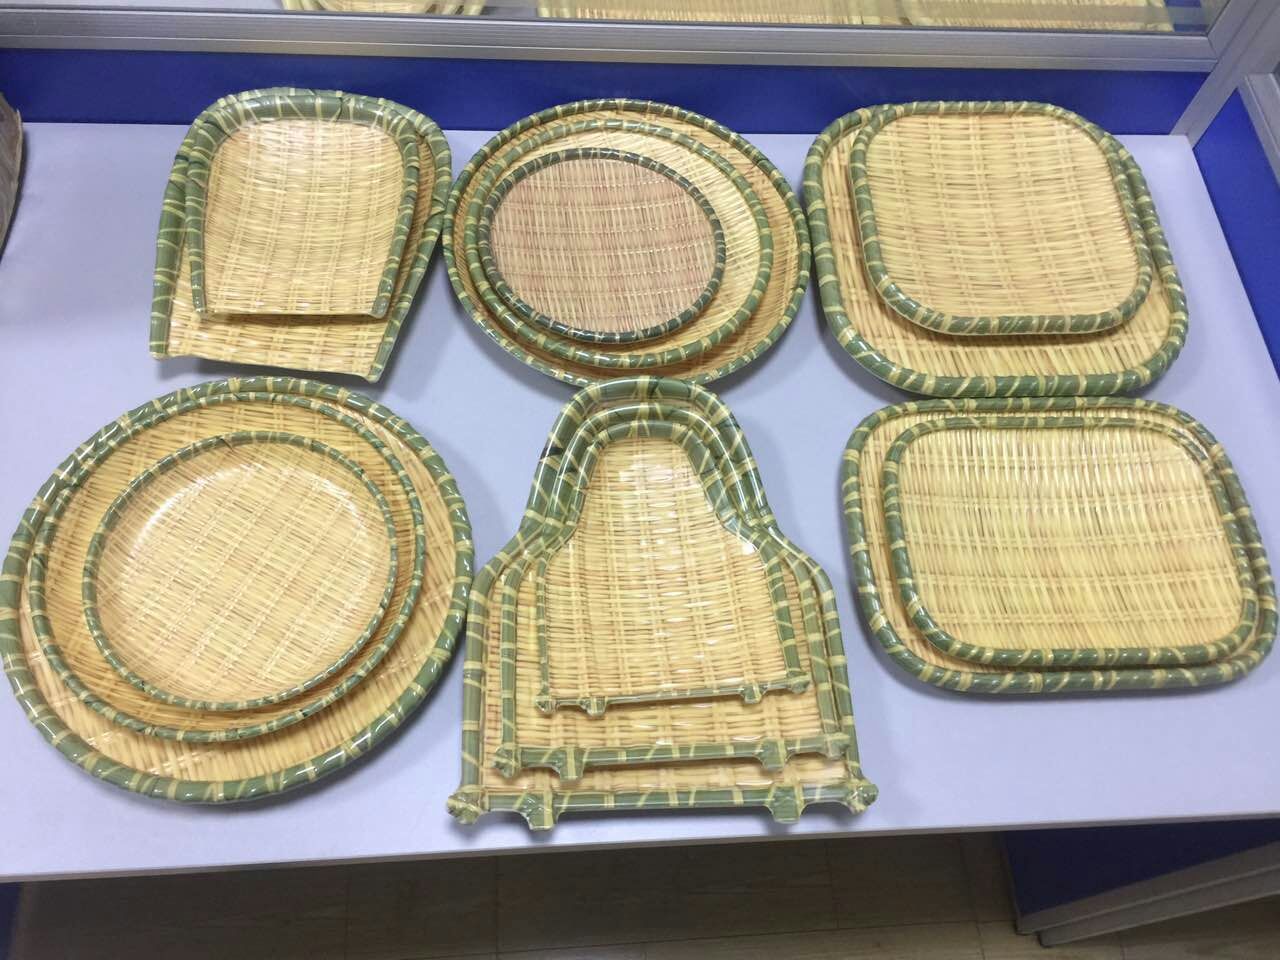 Centro de Hong Kong para a segurança alimentar: utensílios de mesa de melamina de imitação podem ser usados ​​com segurança